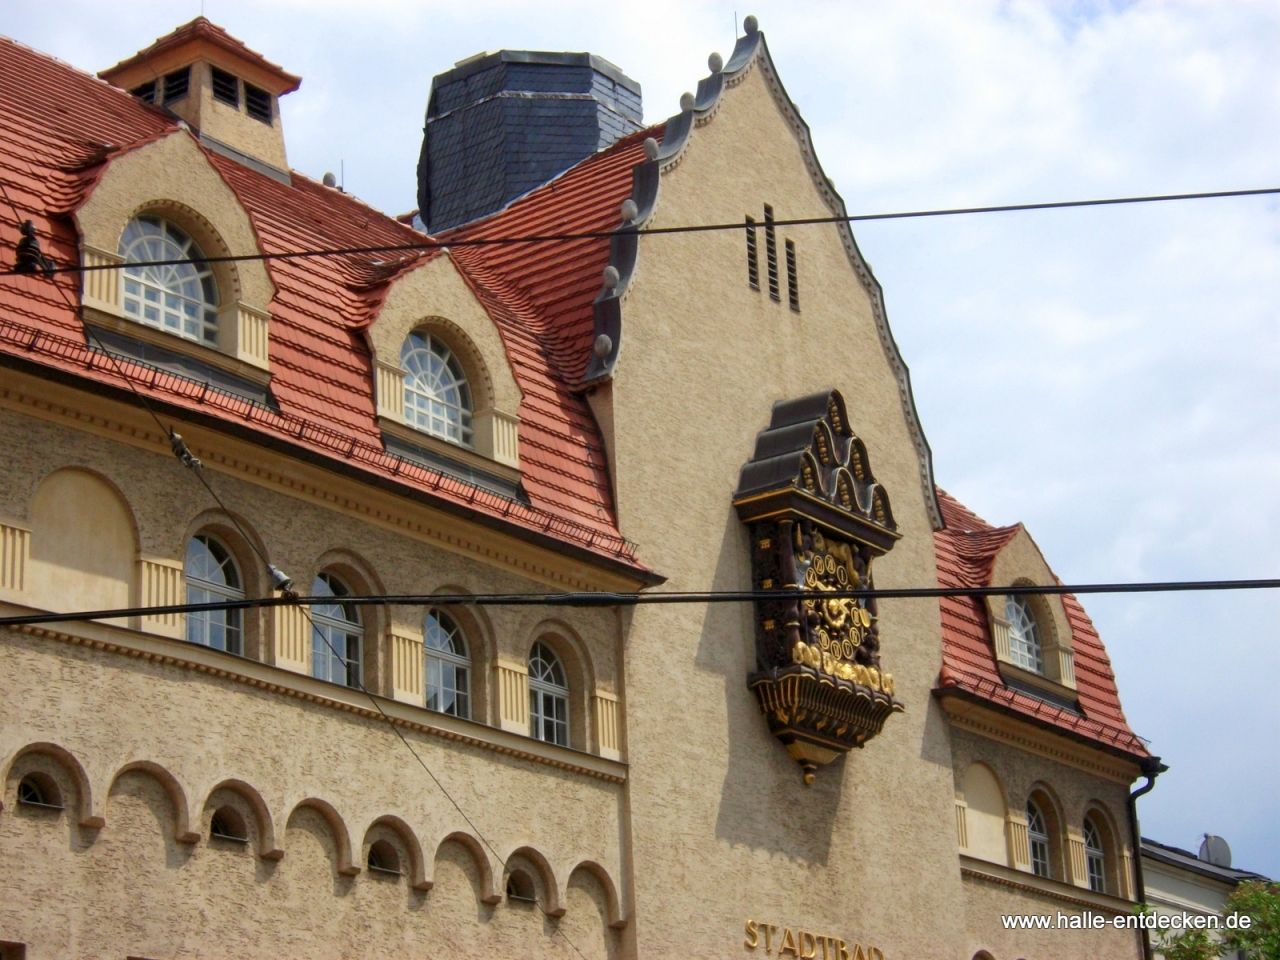 Detailansicht des Stadtbads in Halle (Saale)